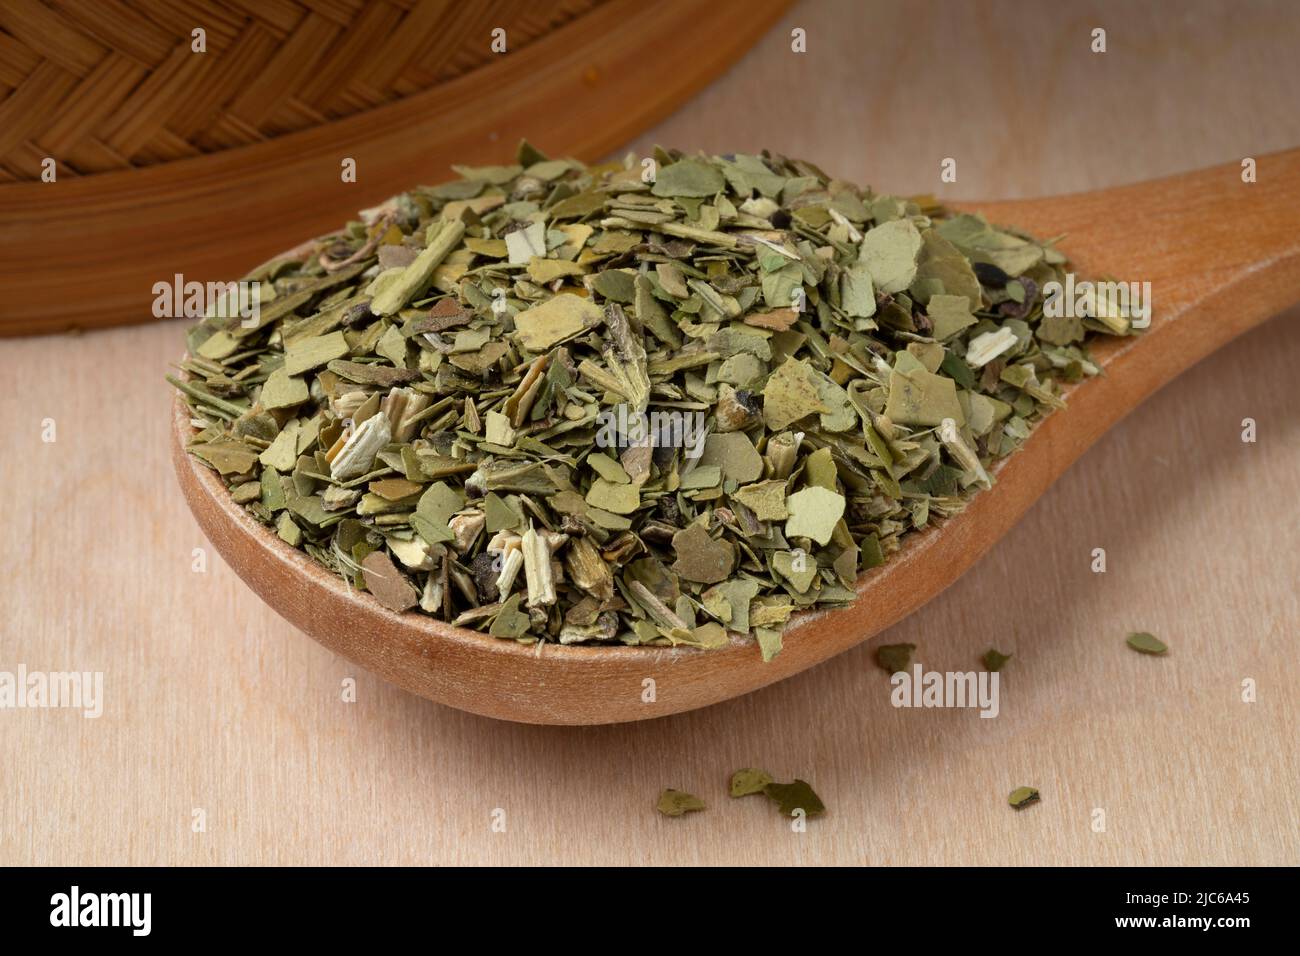 Cuchara de madera con hojas de té mate secas y tradicionales de América del Sur ricas en cafeína Foto de stock